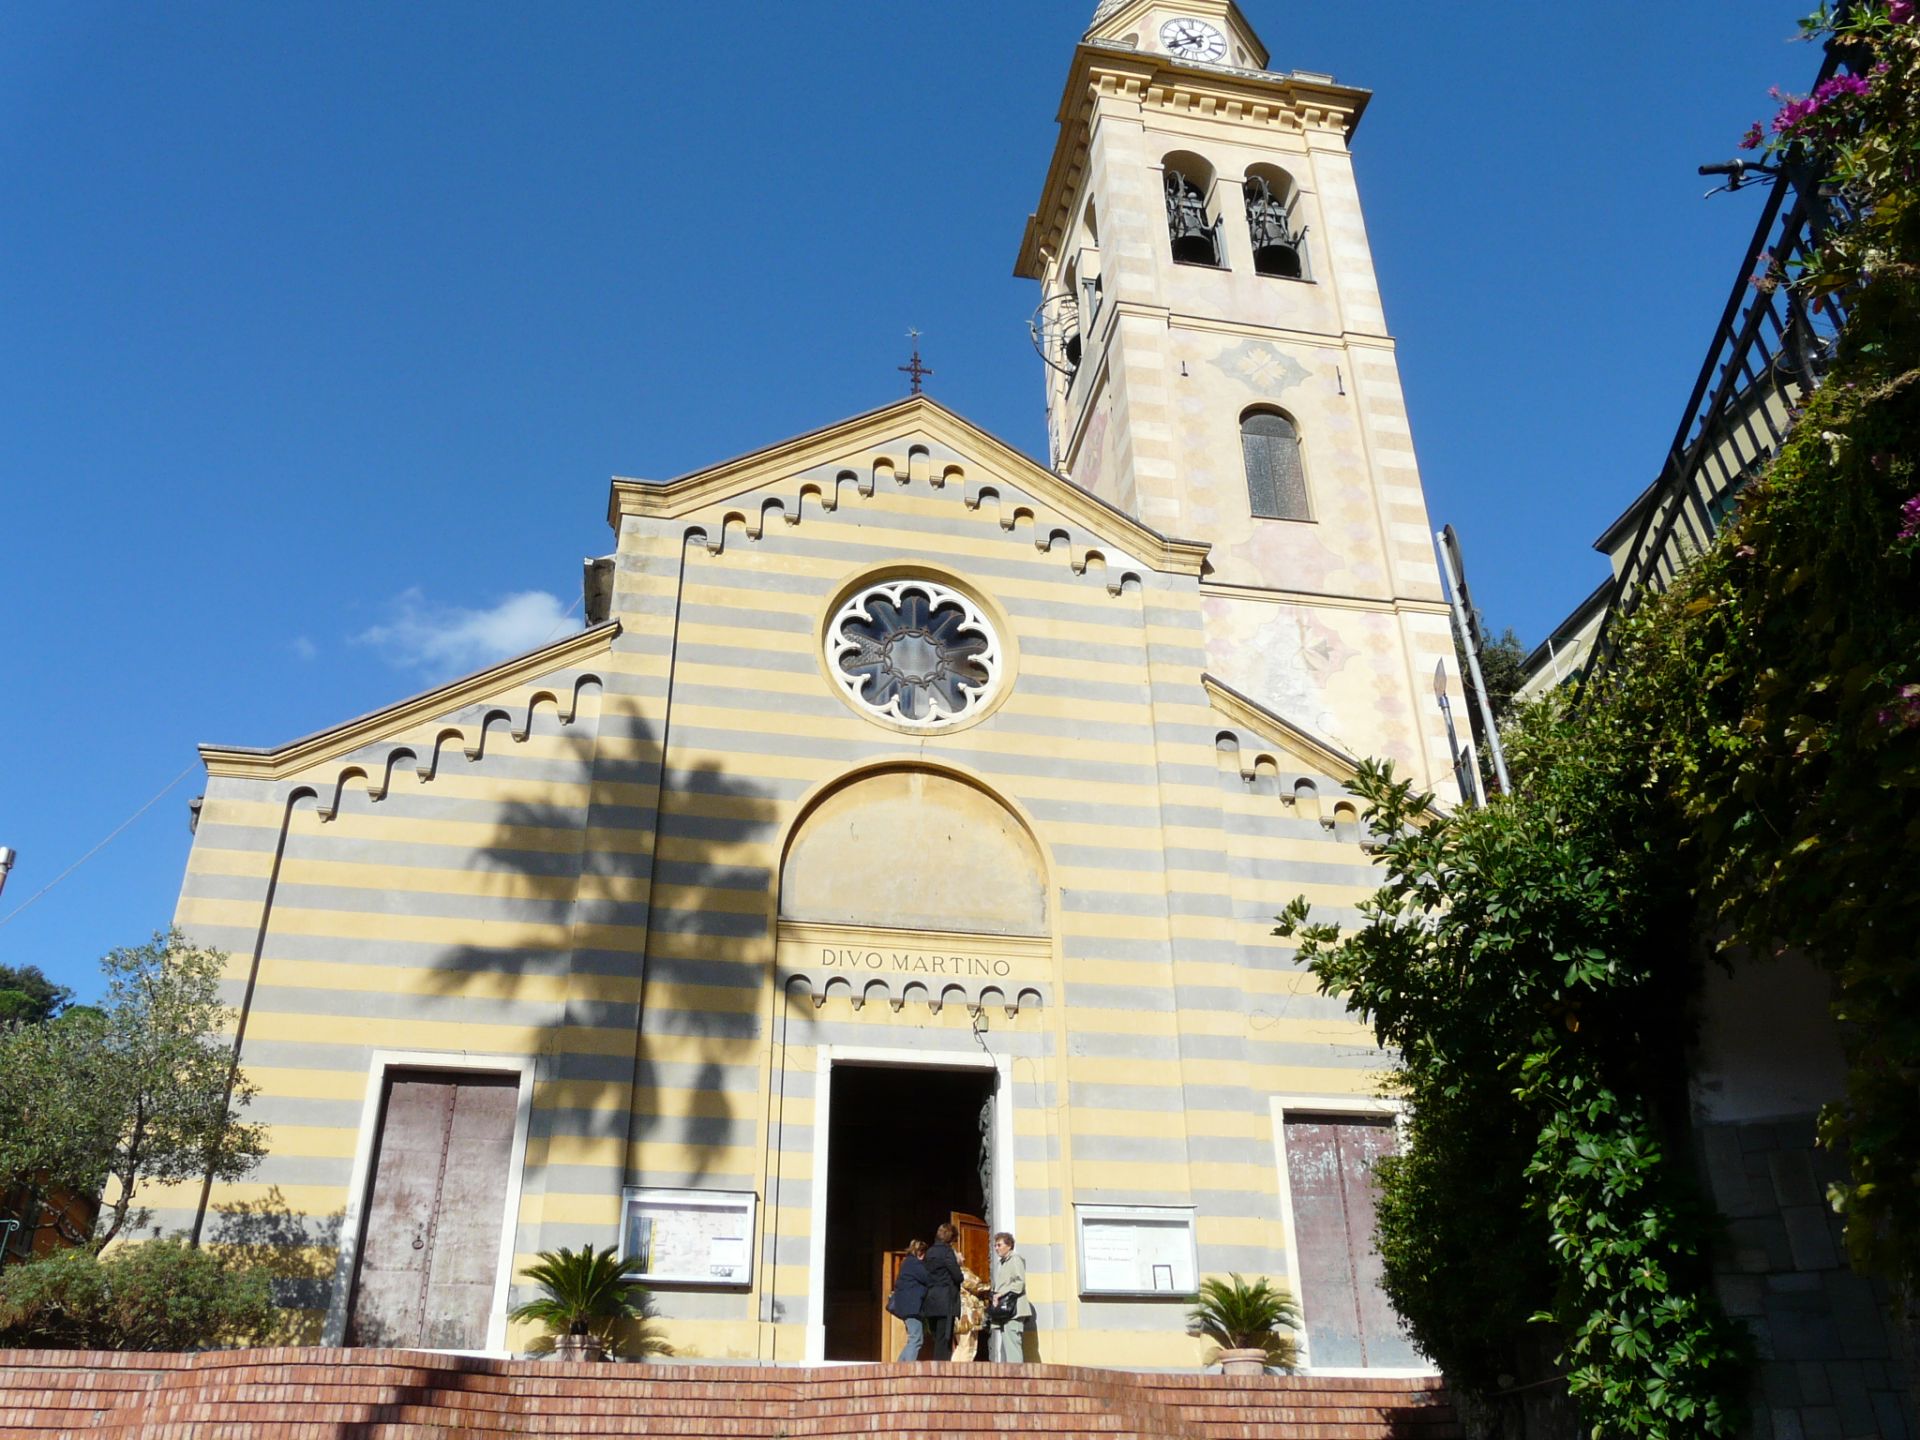 Portofino, il parroco di San Martino: "La chiesa rischia di franare, fermate quei lavori"